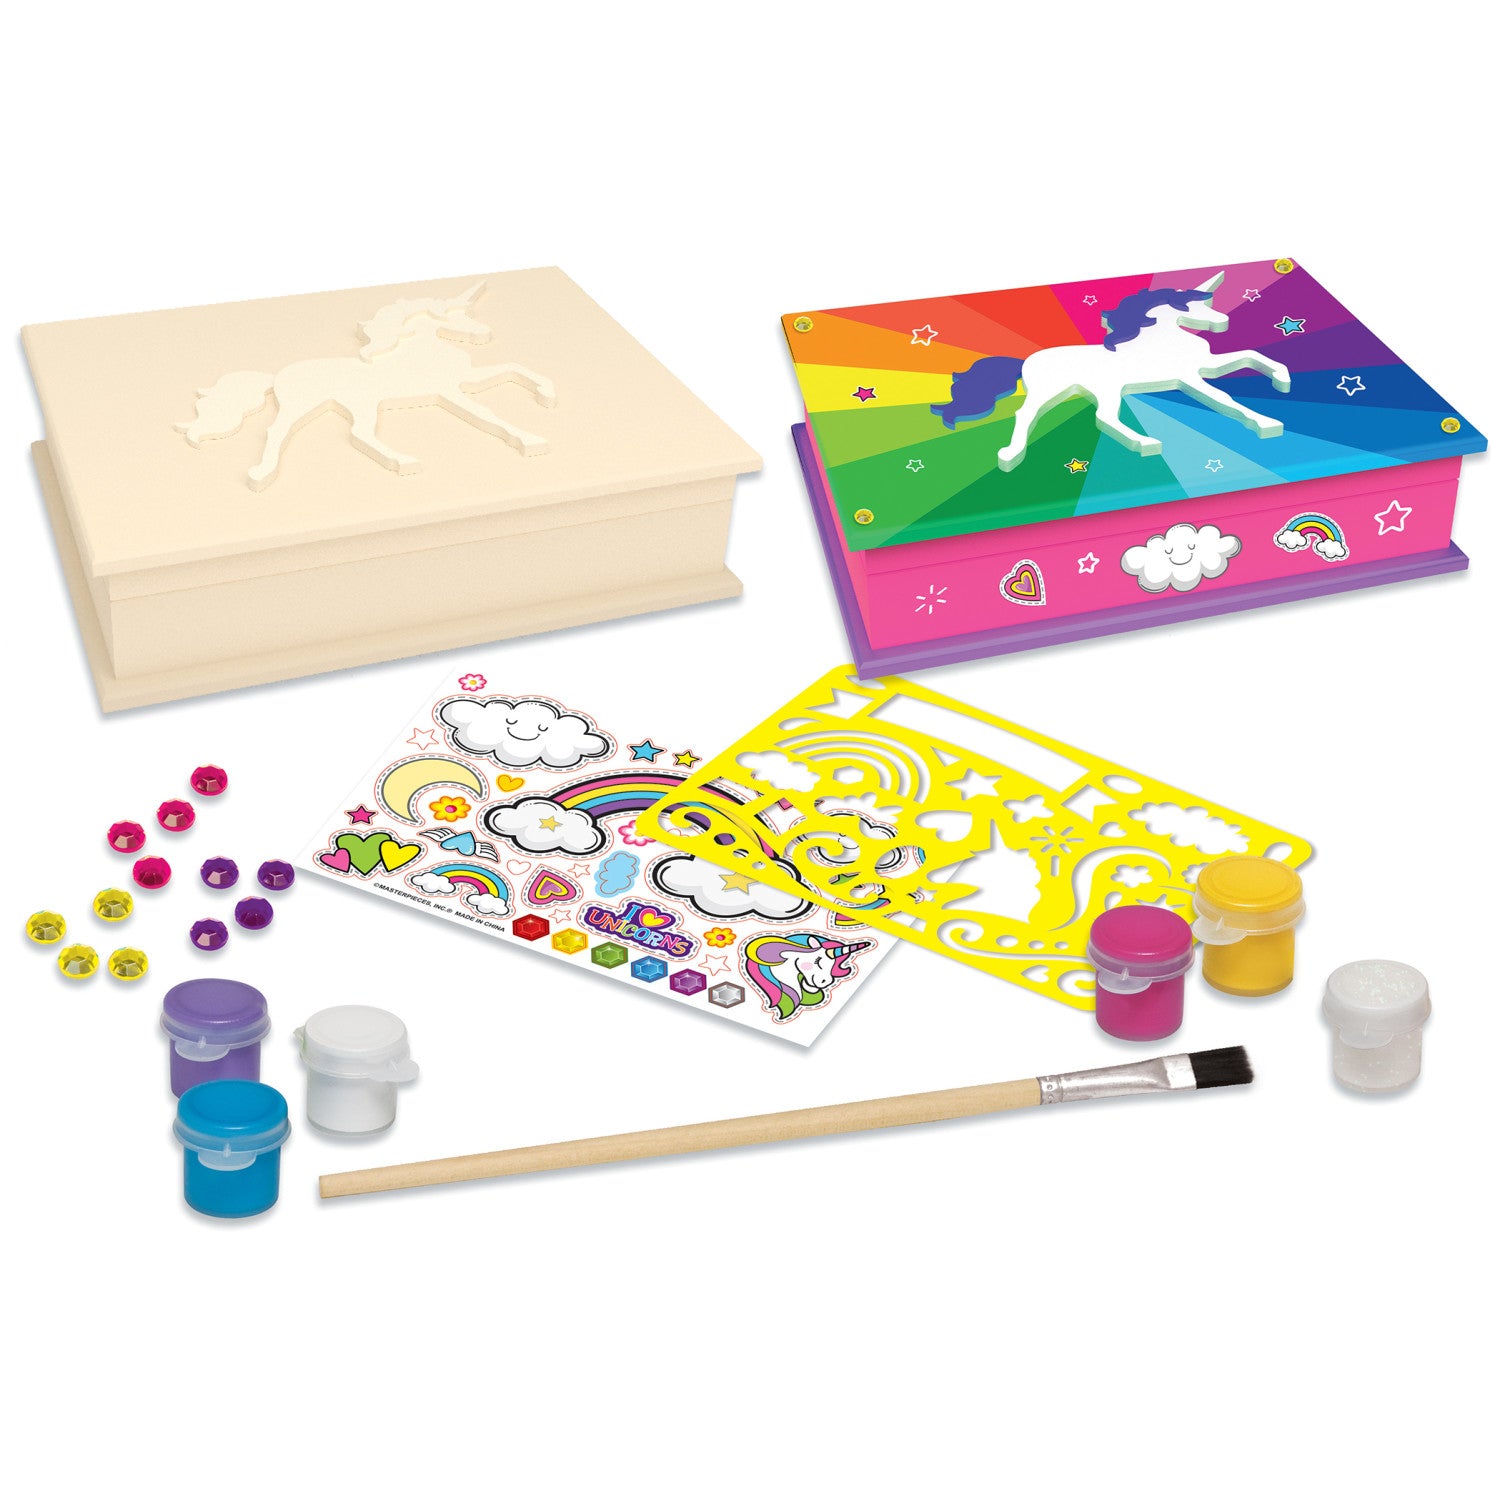 Unicorn Keepsake Box - Wood Paint Kit